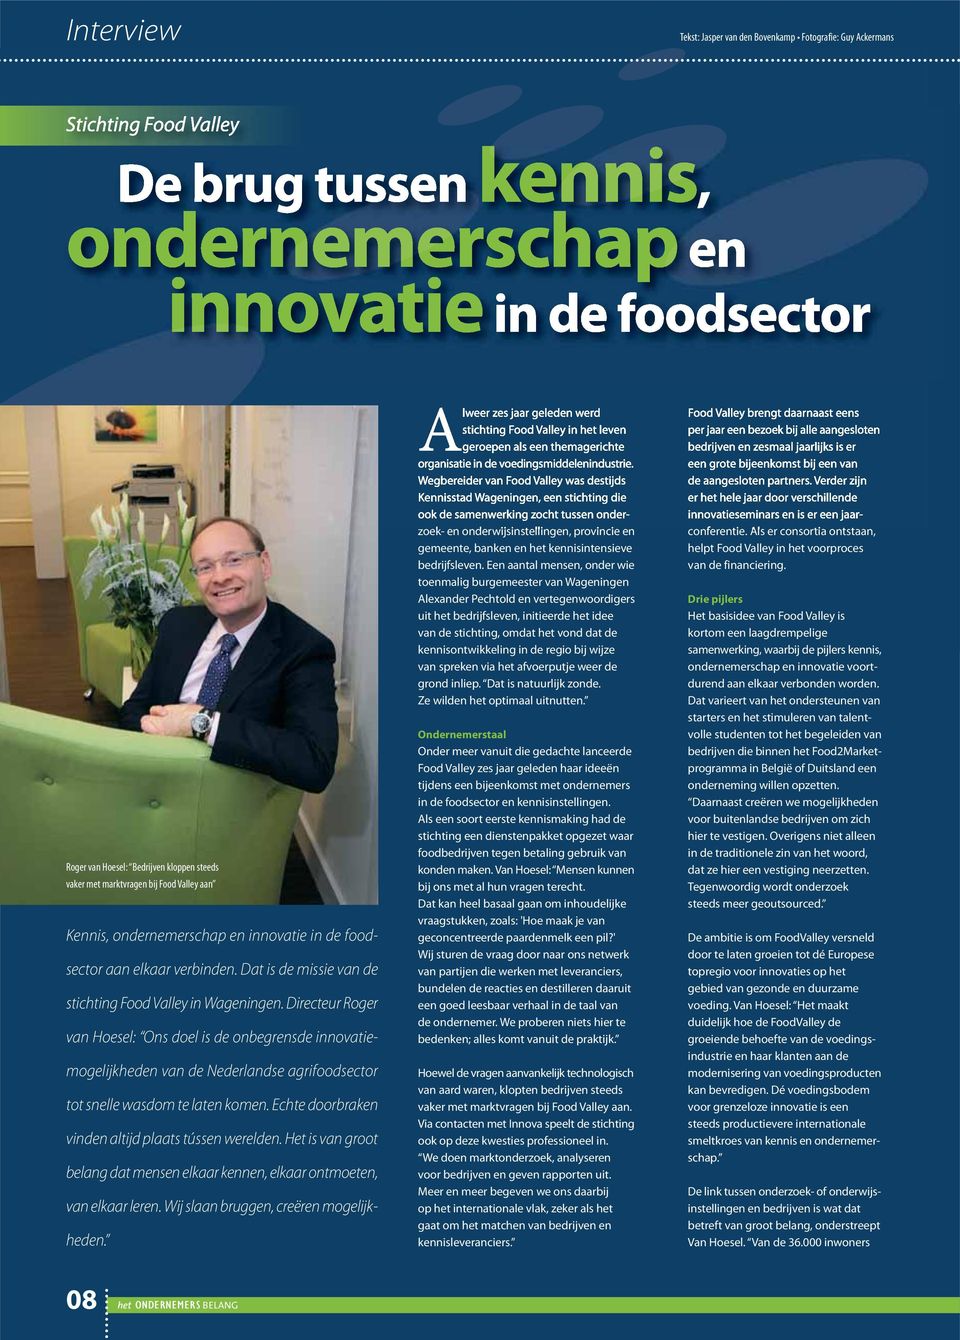 Directeur Roger van Hoesel: Ons doel is de onbegrensde innovatiemogelijkheden van de Nederlandse agrifoodsector tot snelle wasdom te laten komen. Echte doorbraken vinden altijd plaats tússen werelden.